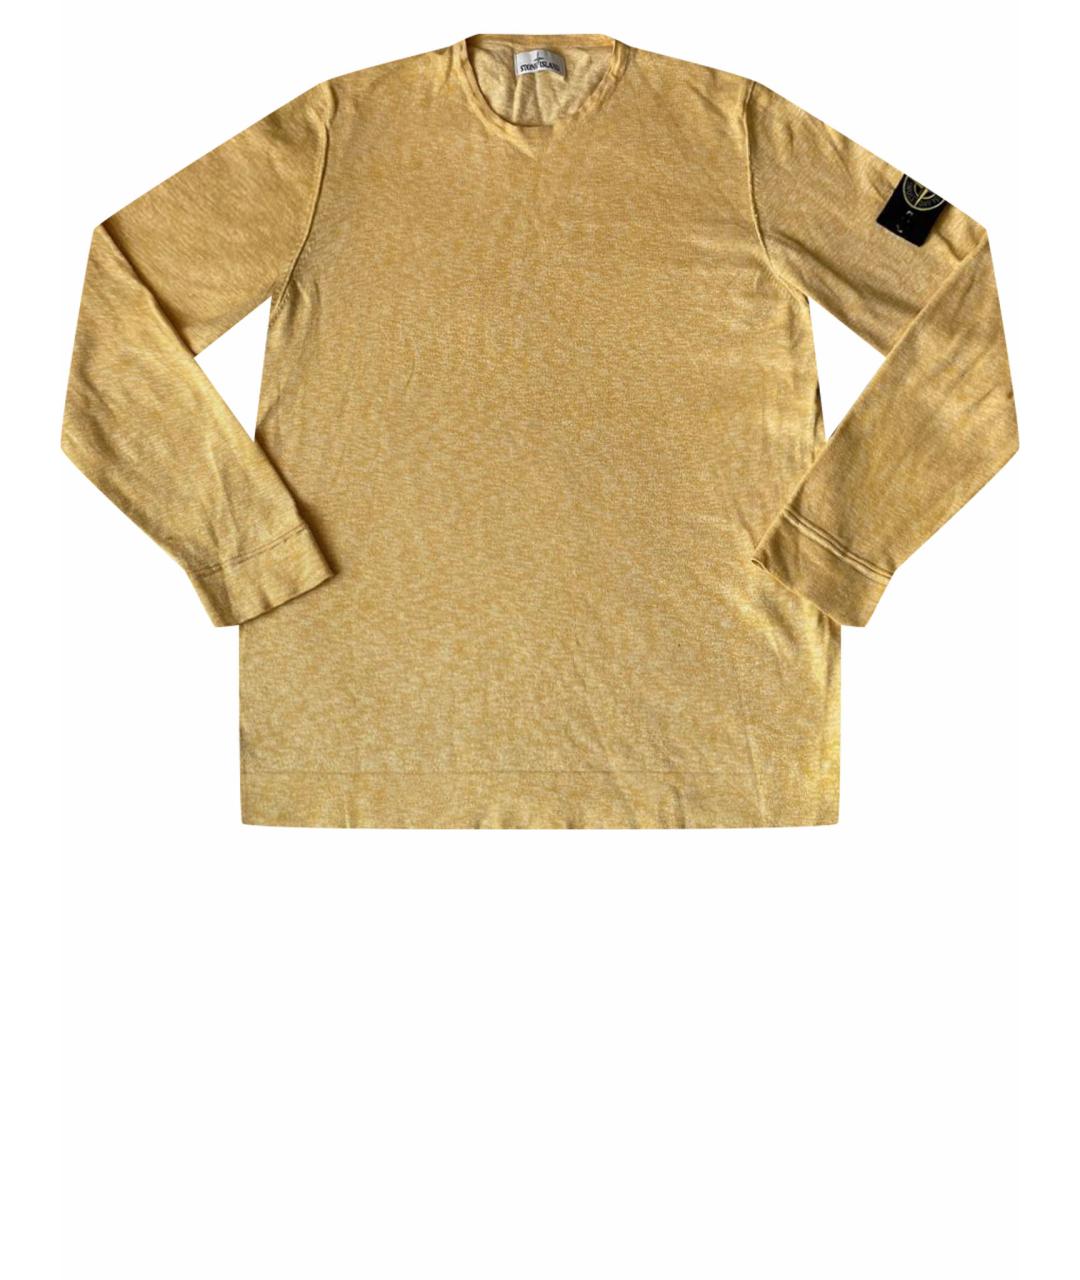 STONE ISLAND Желтый хлопковый джемпер / свитер, фото 1